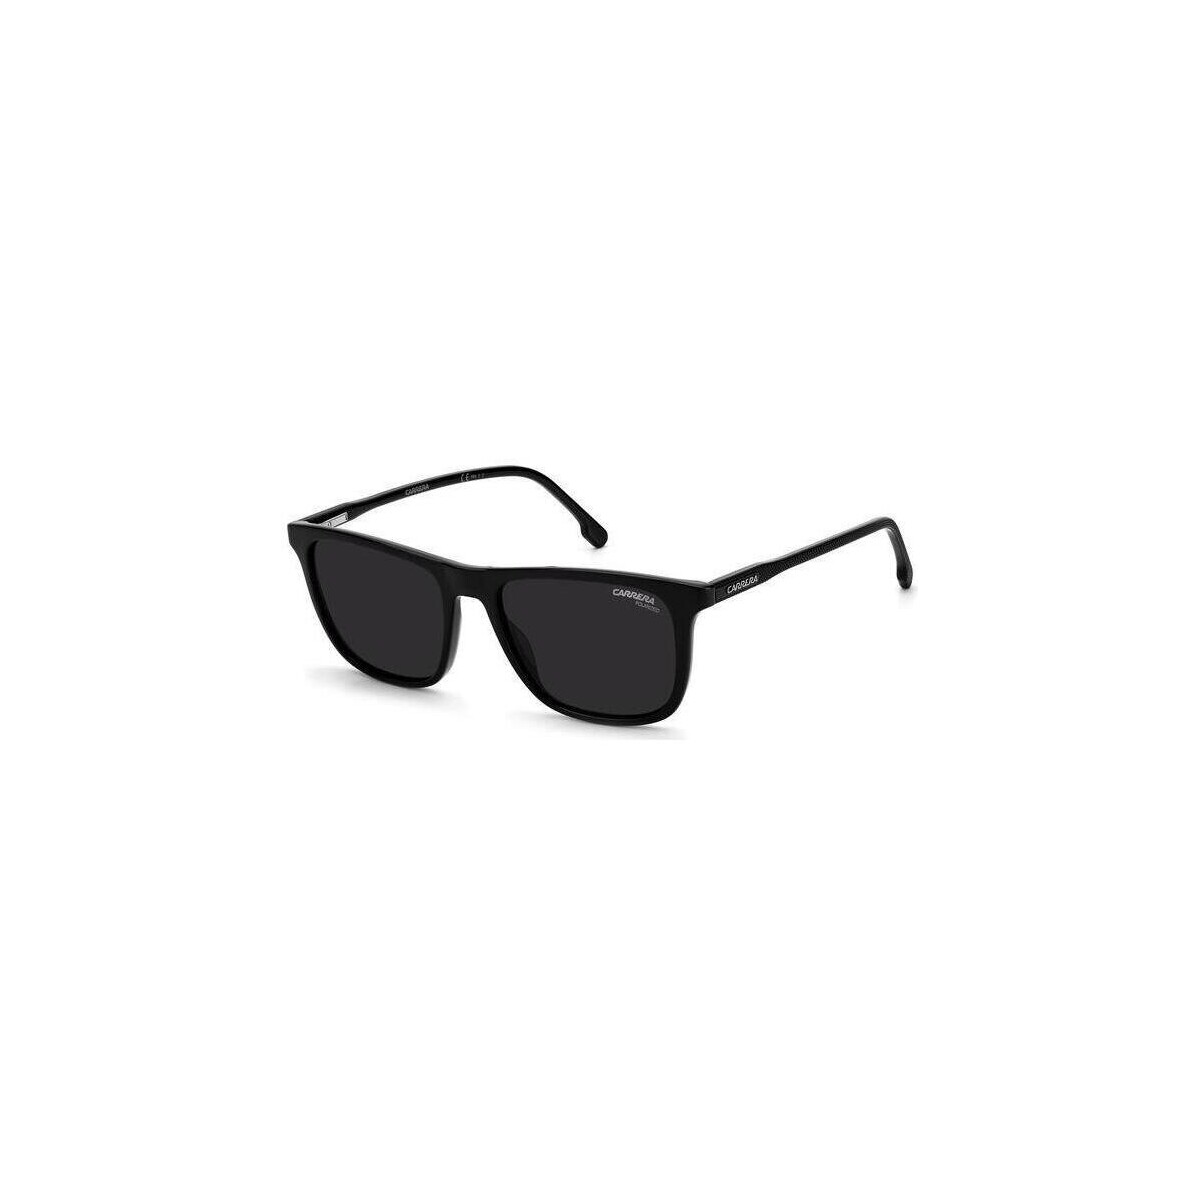 Orologi & Gioielli Uomo Occhiali da sole Carrera 261/S Occhiali da sole, Nero/Grigio, 53 mm Nero